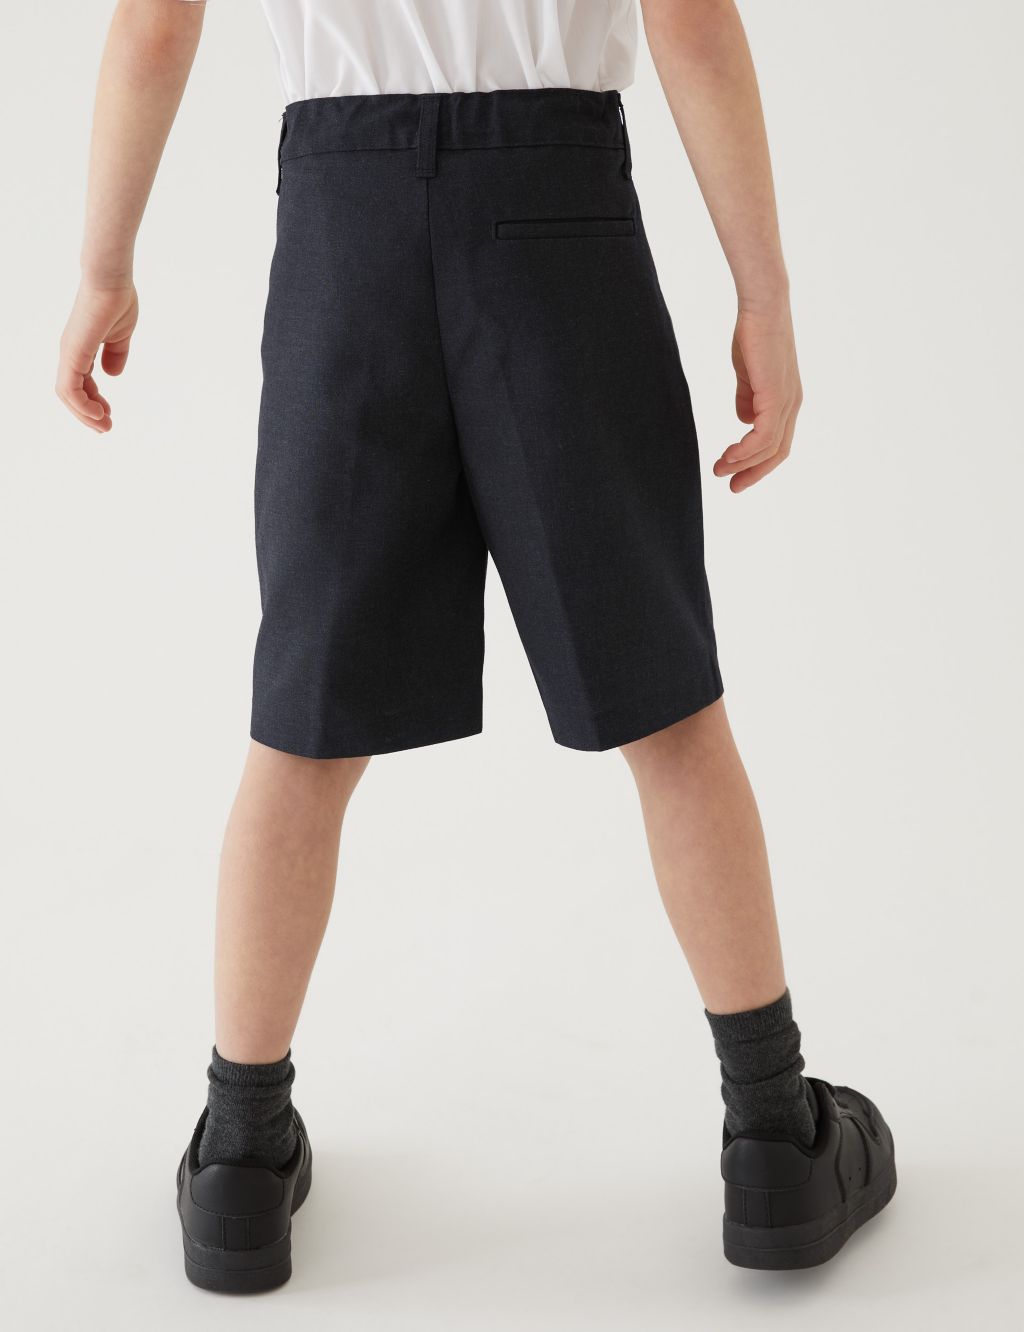 2pk Boys' Regular Leg School Shorts (2-14 Yrs) image 2